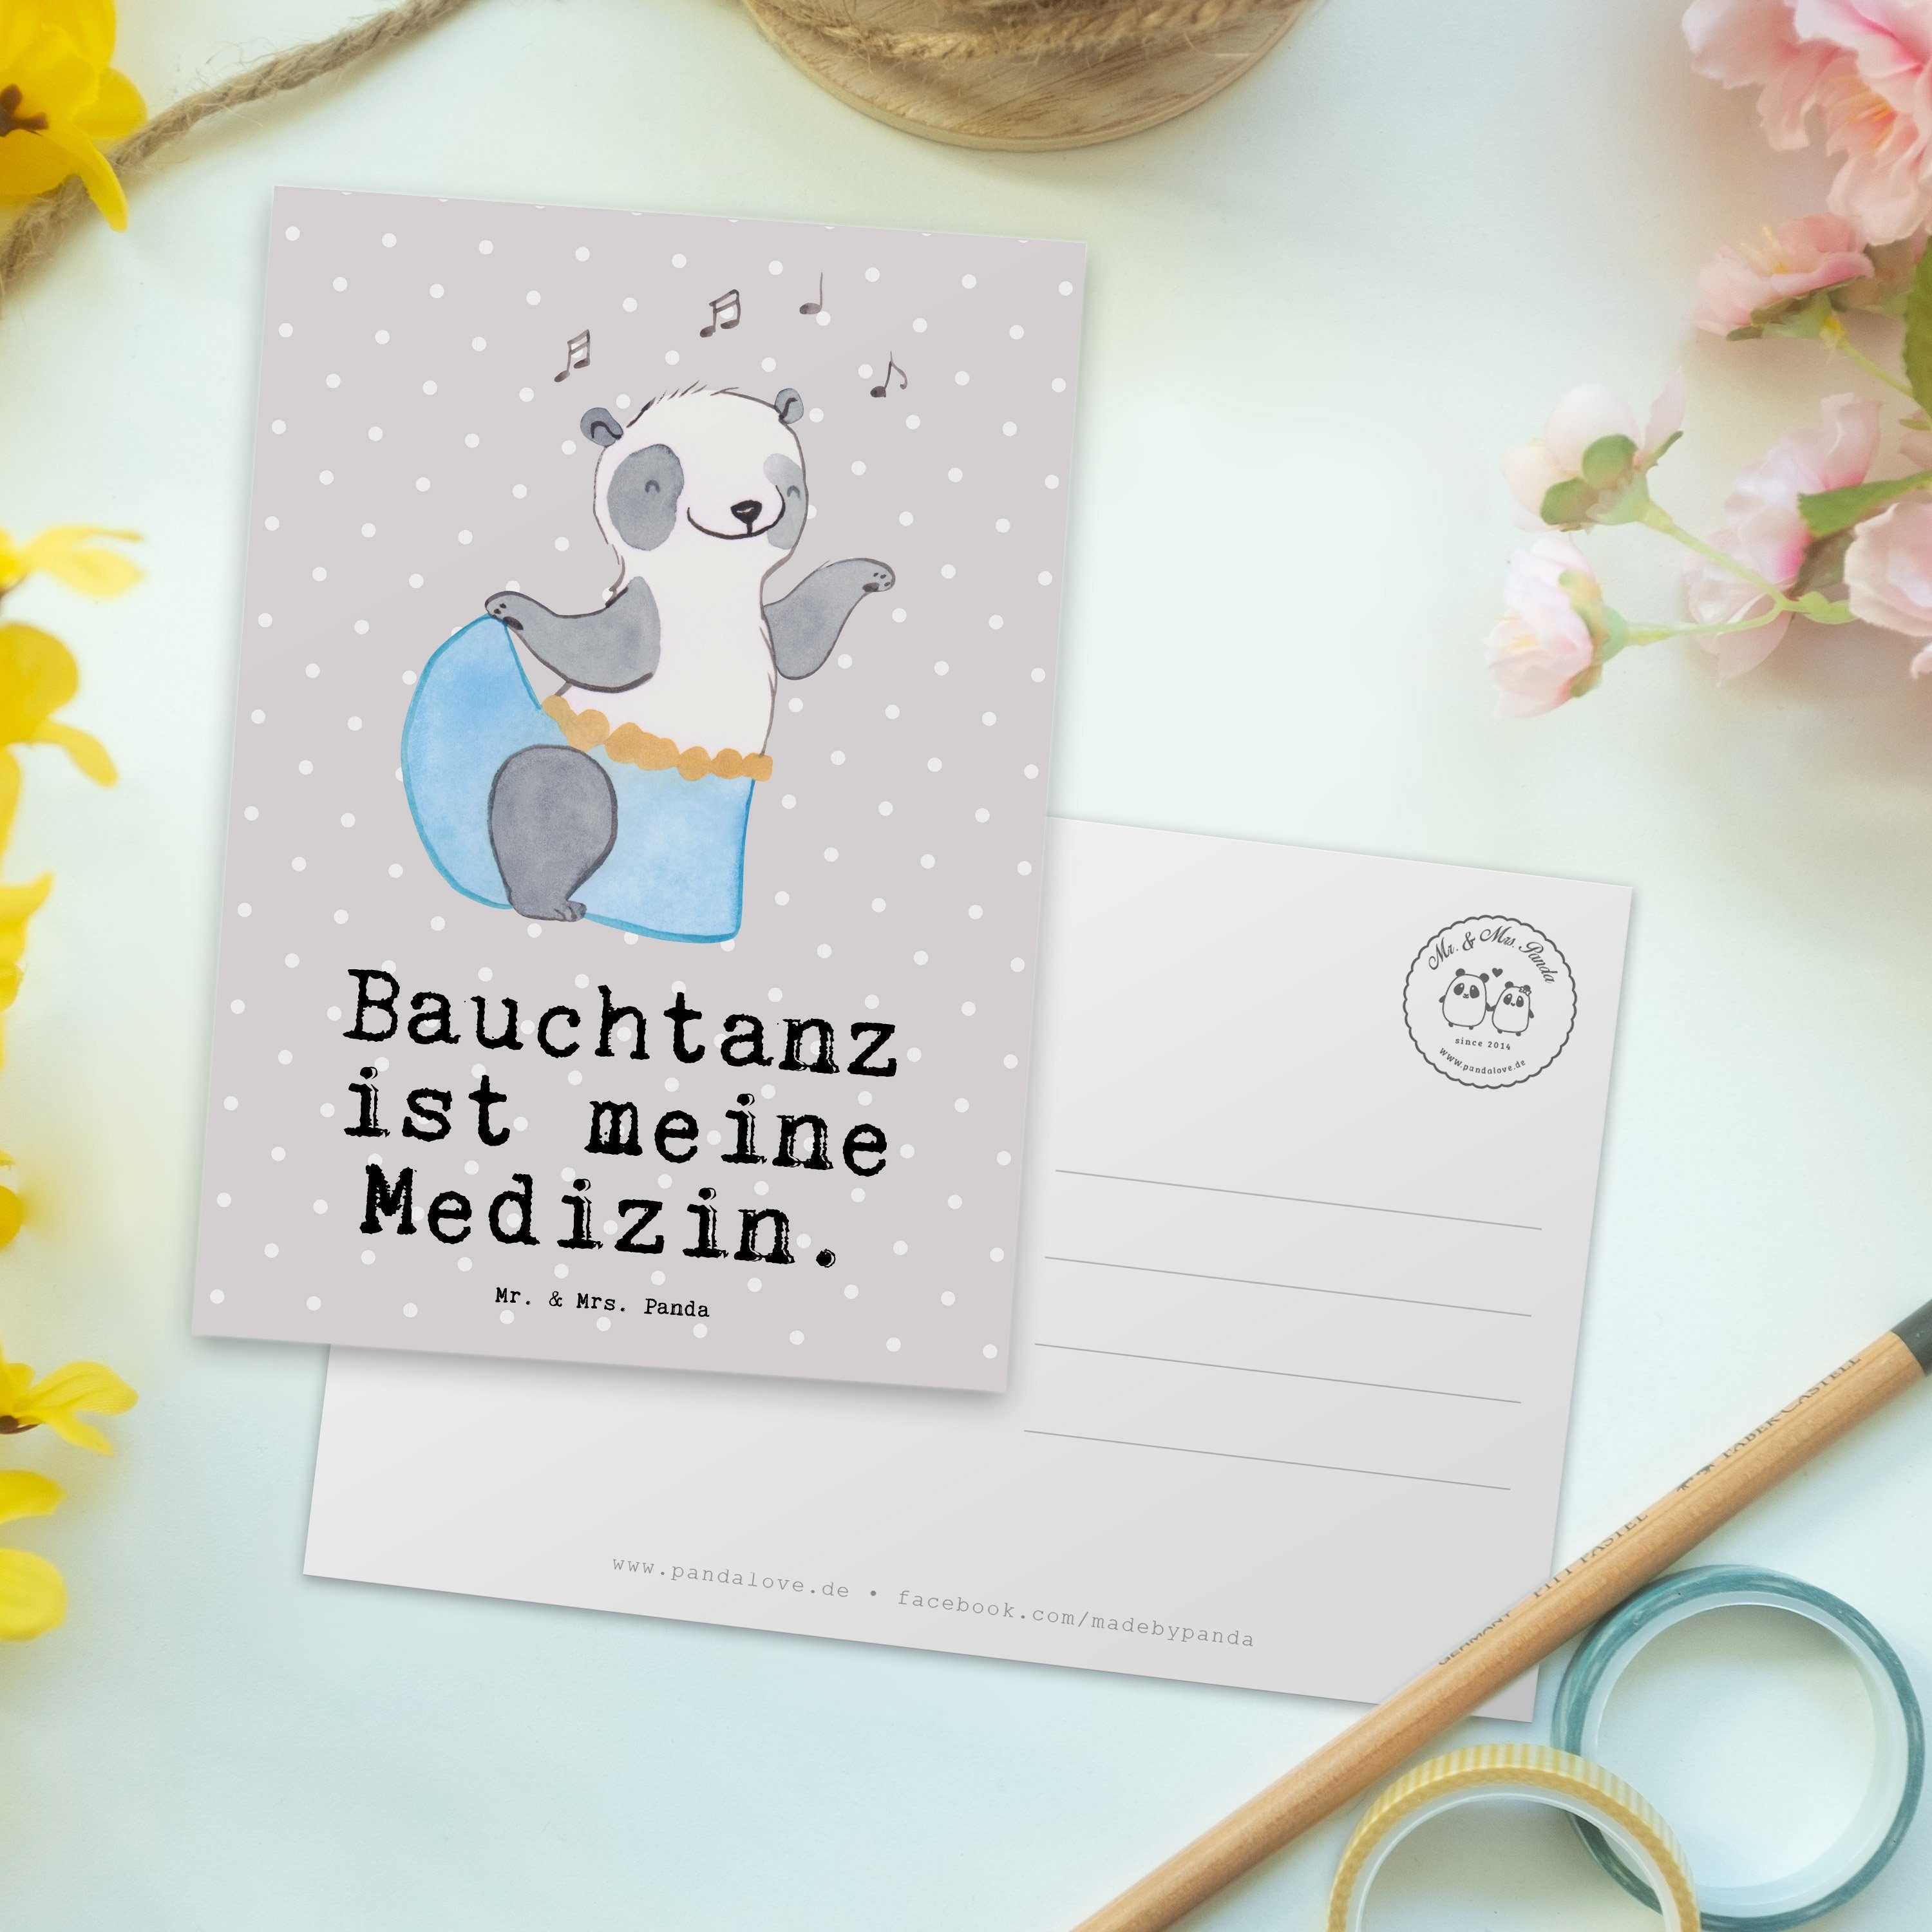 Pastell Panda Auszeichnung, - Medizin Bauchtanz Mrs. Panda - & Postkarte Geschenk, Grau Mr. Ansi